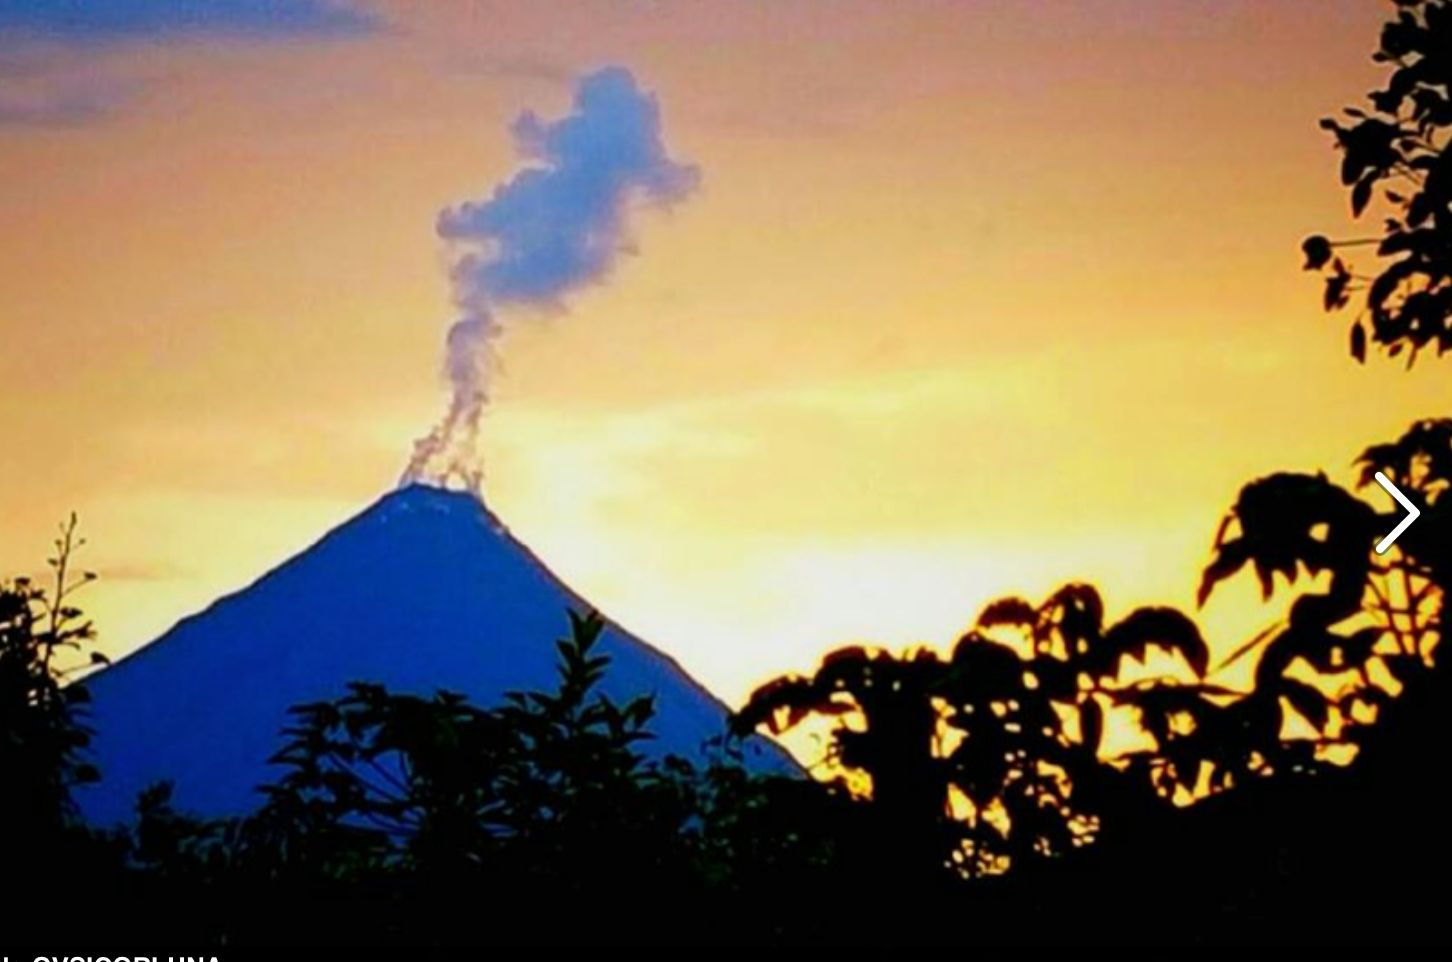 Arenal: Gases y vapores El 2 de octubre 2015, pobladores en los alrededores del volcán Arenal notaron la presencia de fumarolas algo vigorosas en la cima del volcán (Cráter C) que estuvo activo hasta